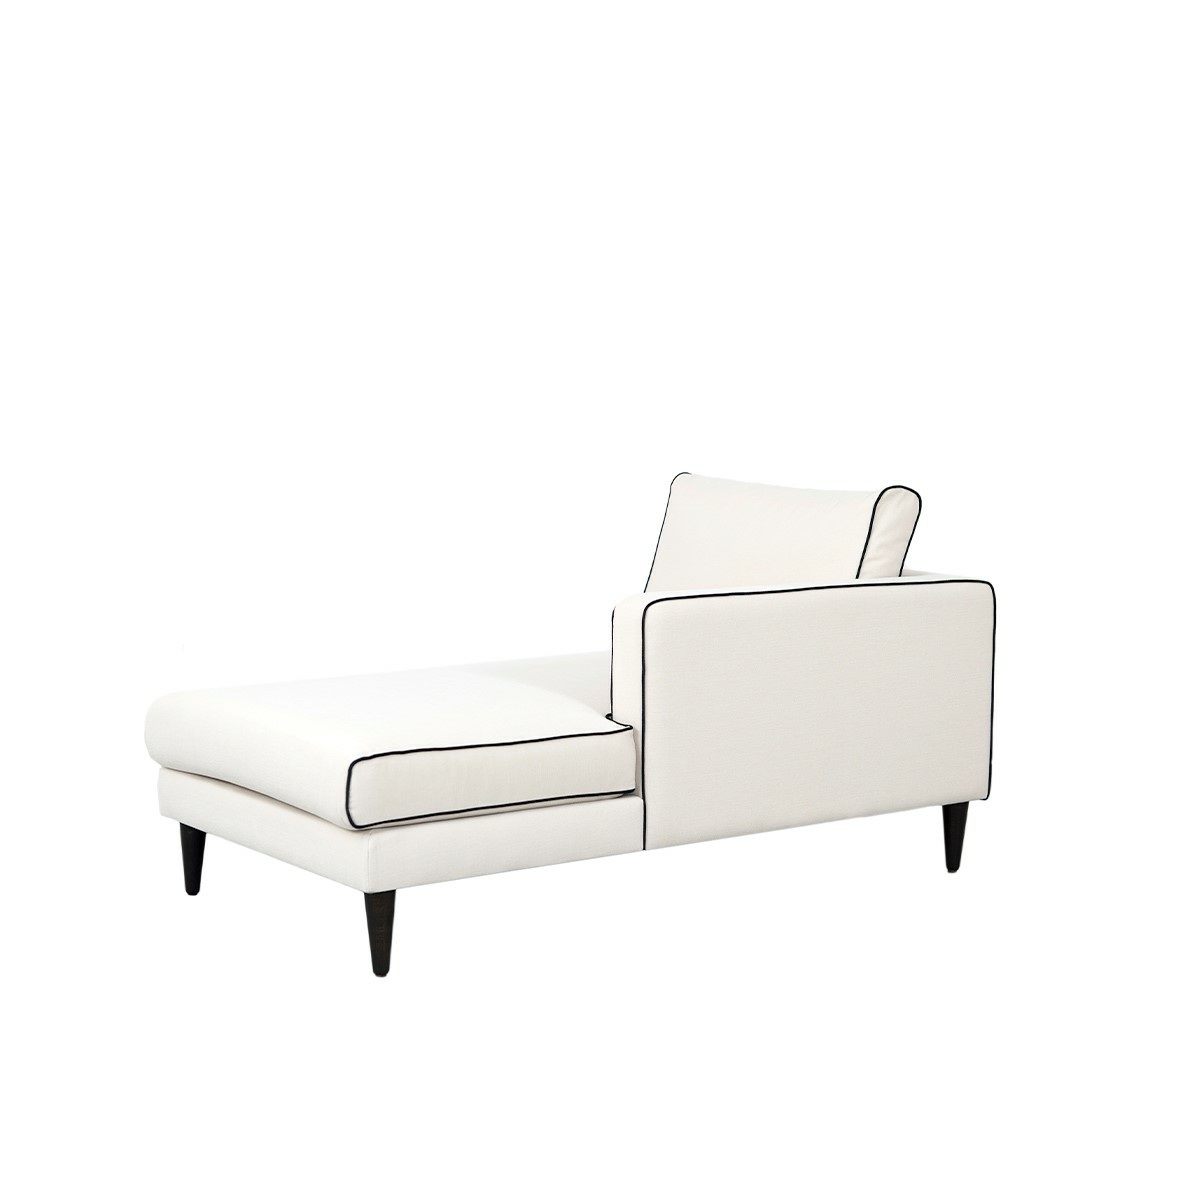 Noa sofa - Right armrest, L150 x P80 x H75 cm - Cotton - image 3